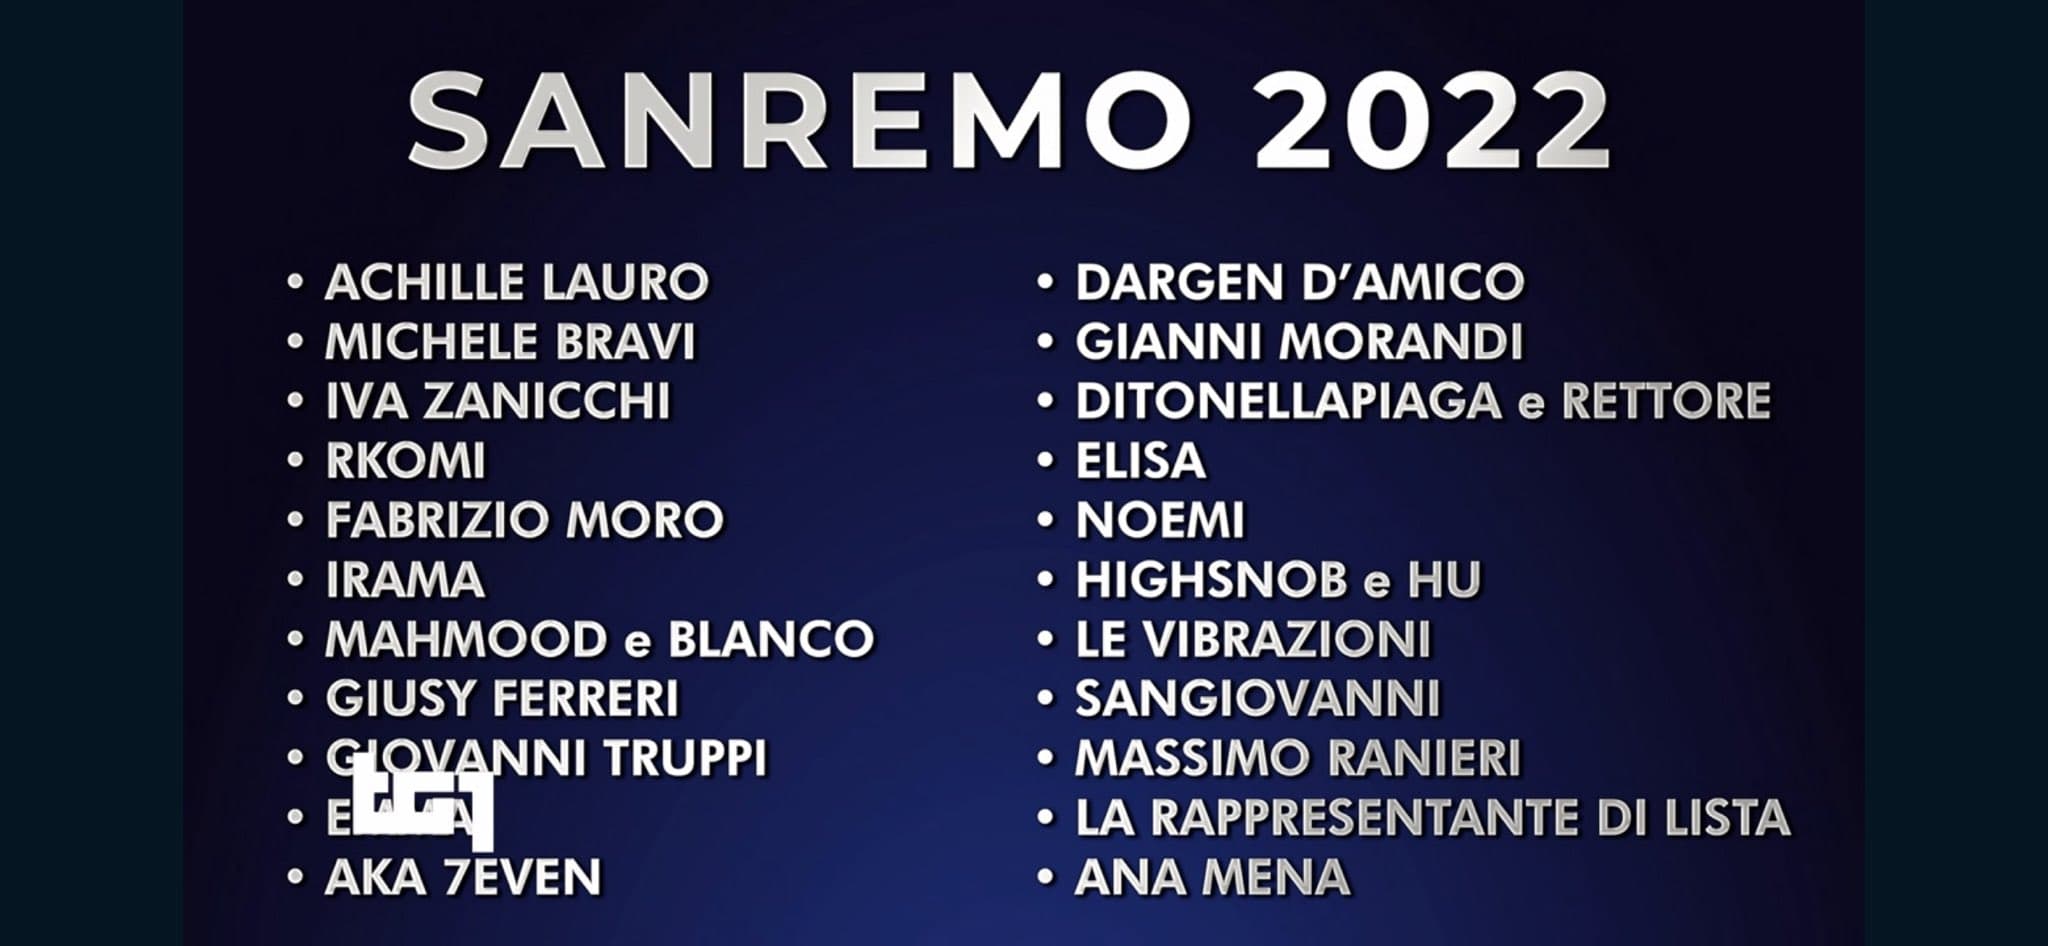 Sanremo 2022 concorrenti